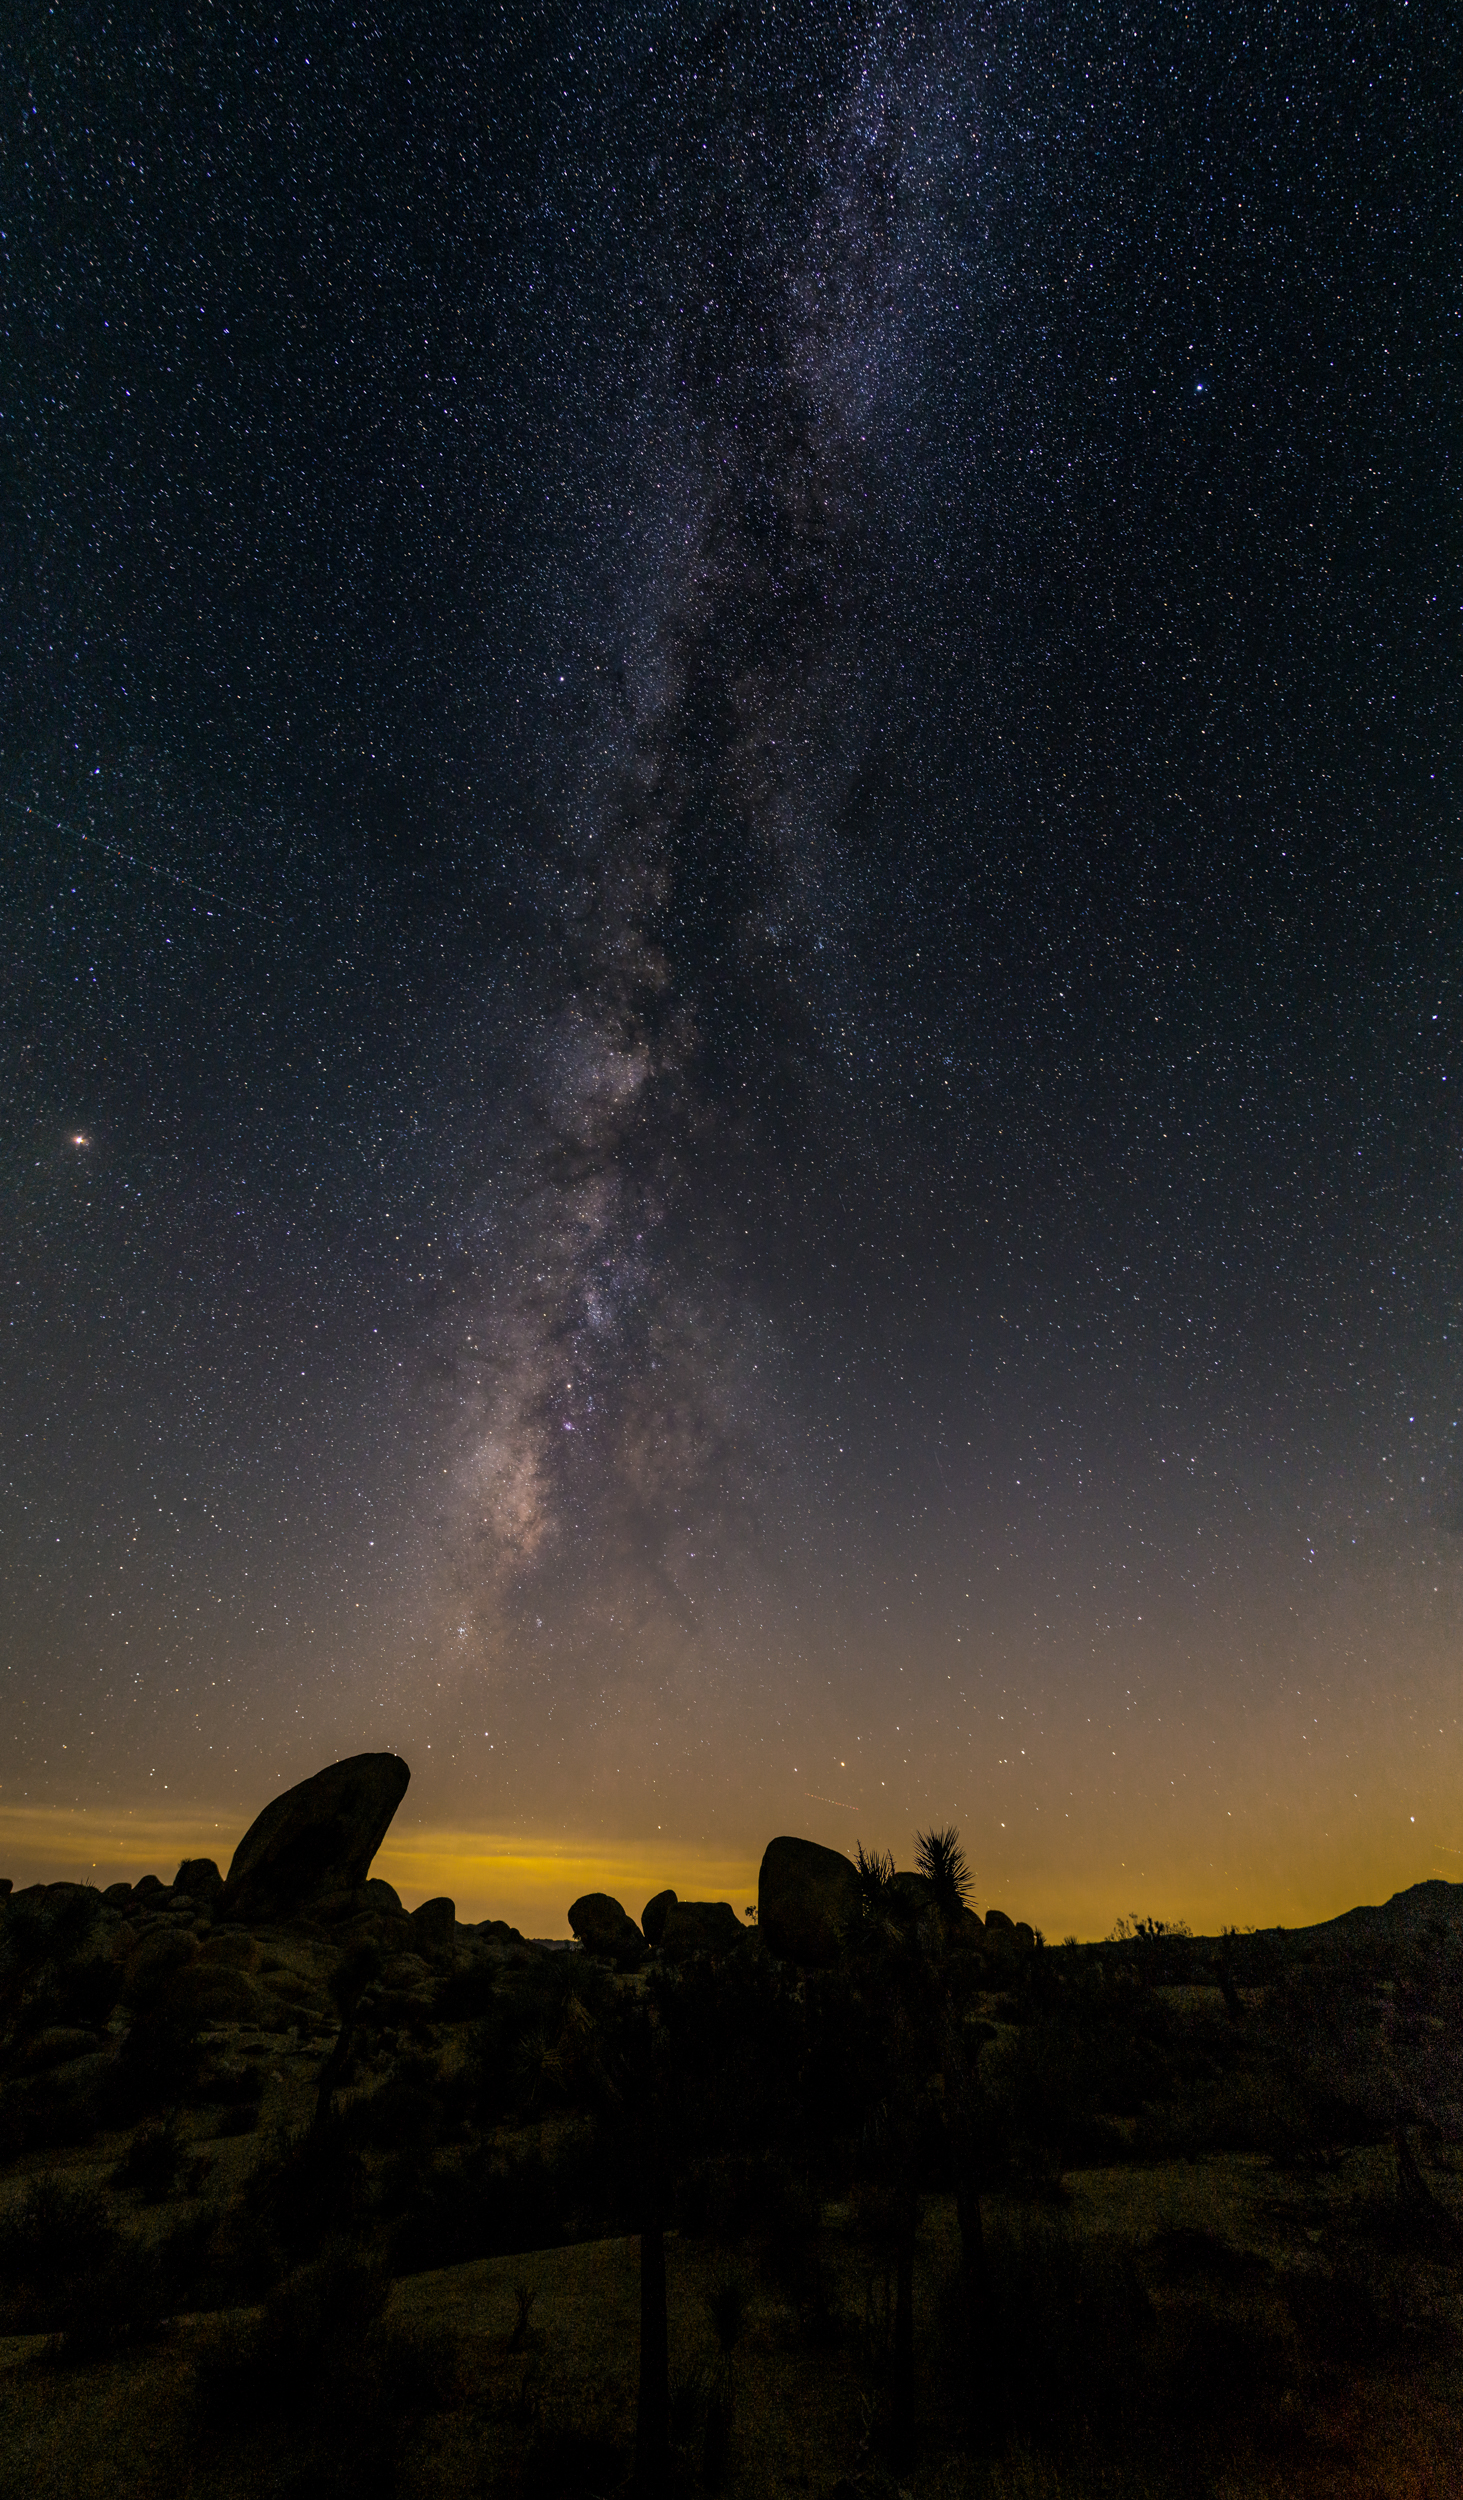 The Milky Way at Joshua Tree National Park